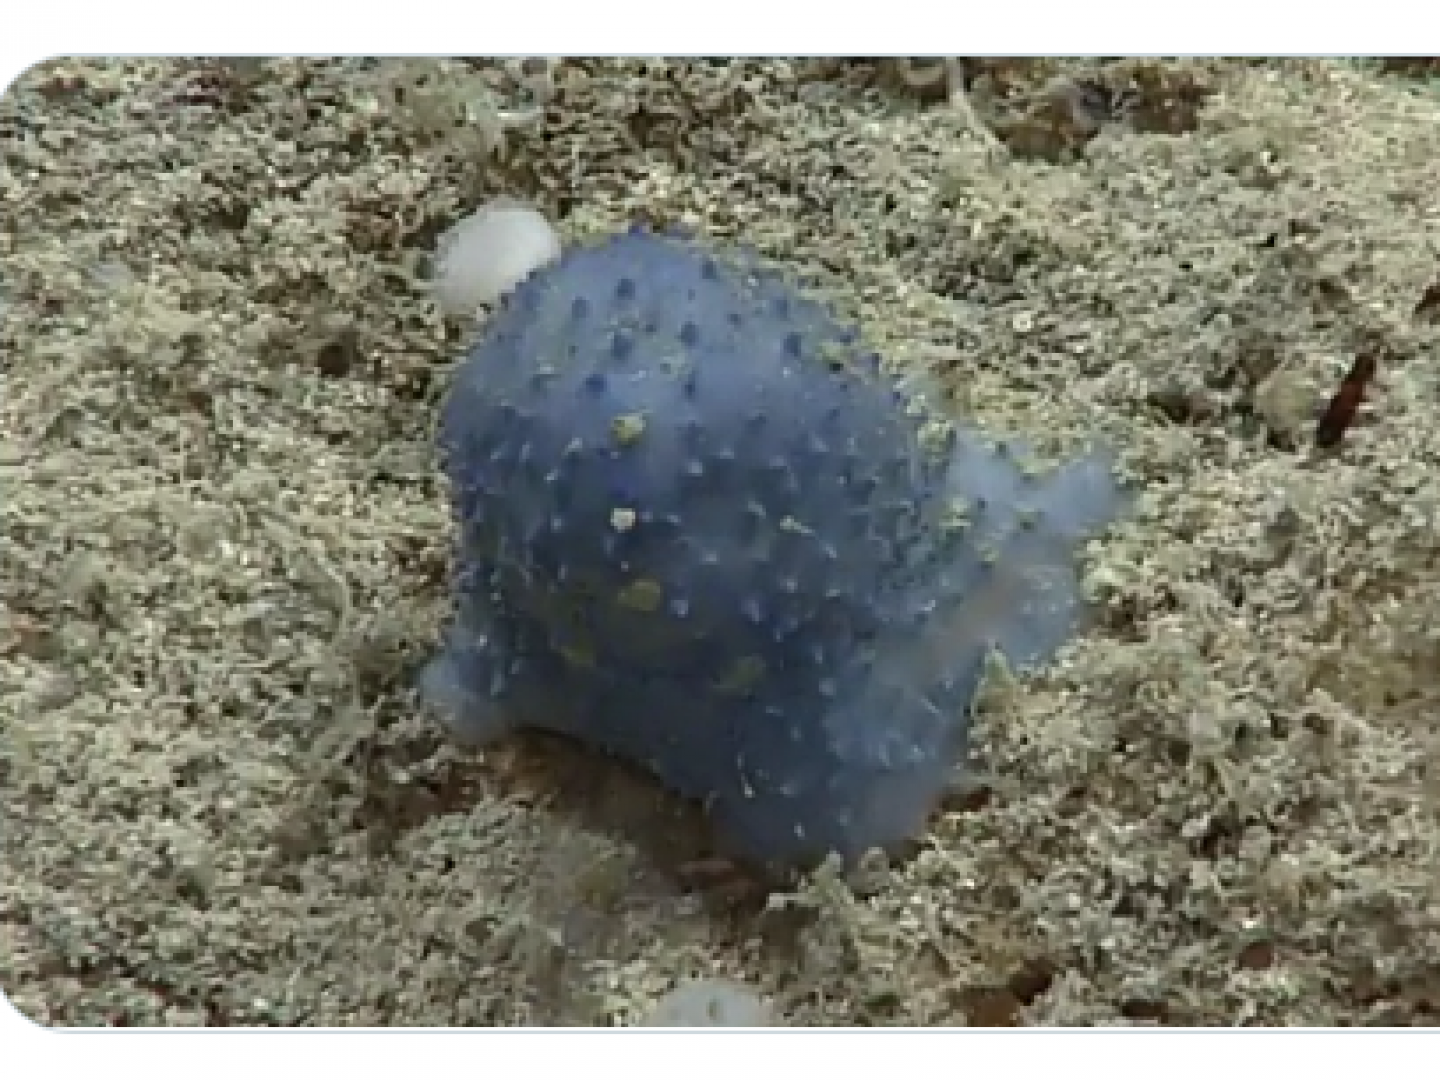 بالفيديو رصد كائن أزرق غريب مثير للدهشة في قاع المحيط الكاريبي